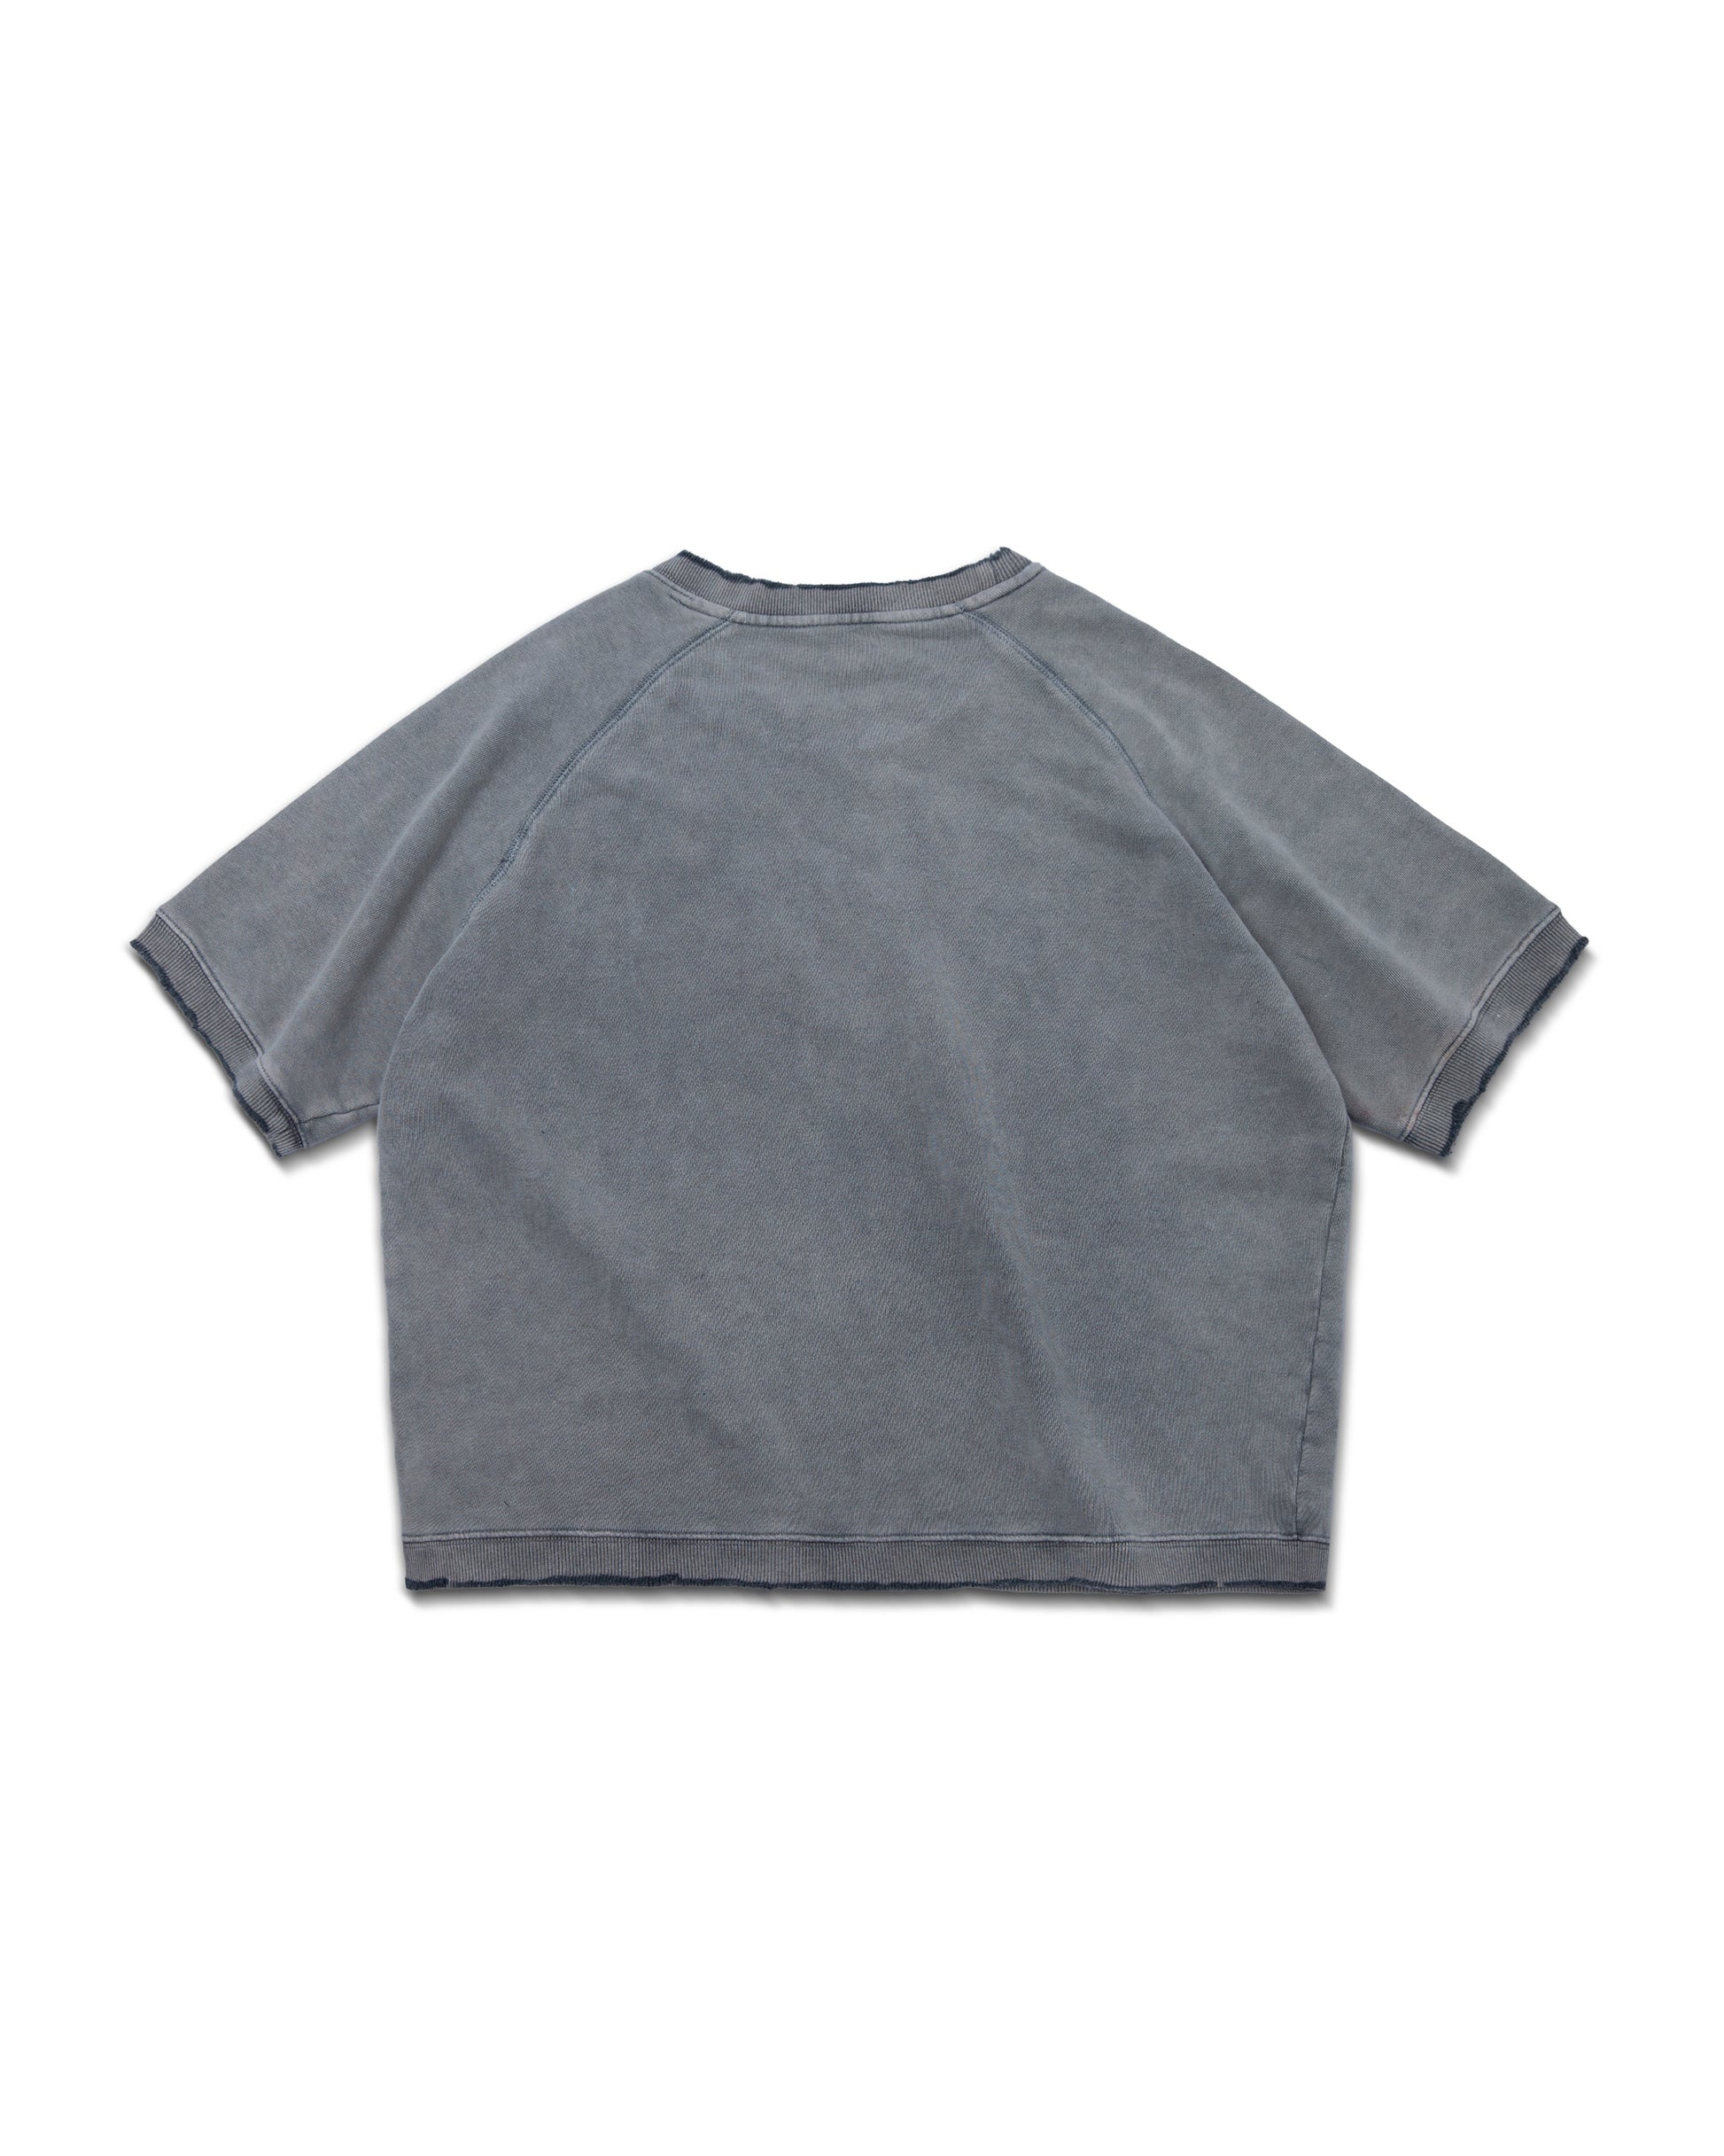 washed-light-grey-raglan-shirt-goldie-astoud